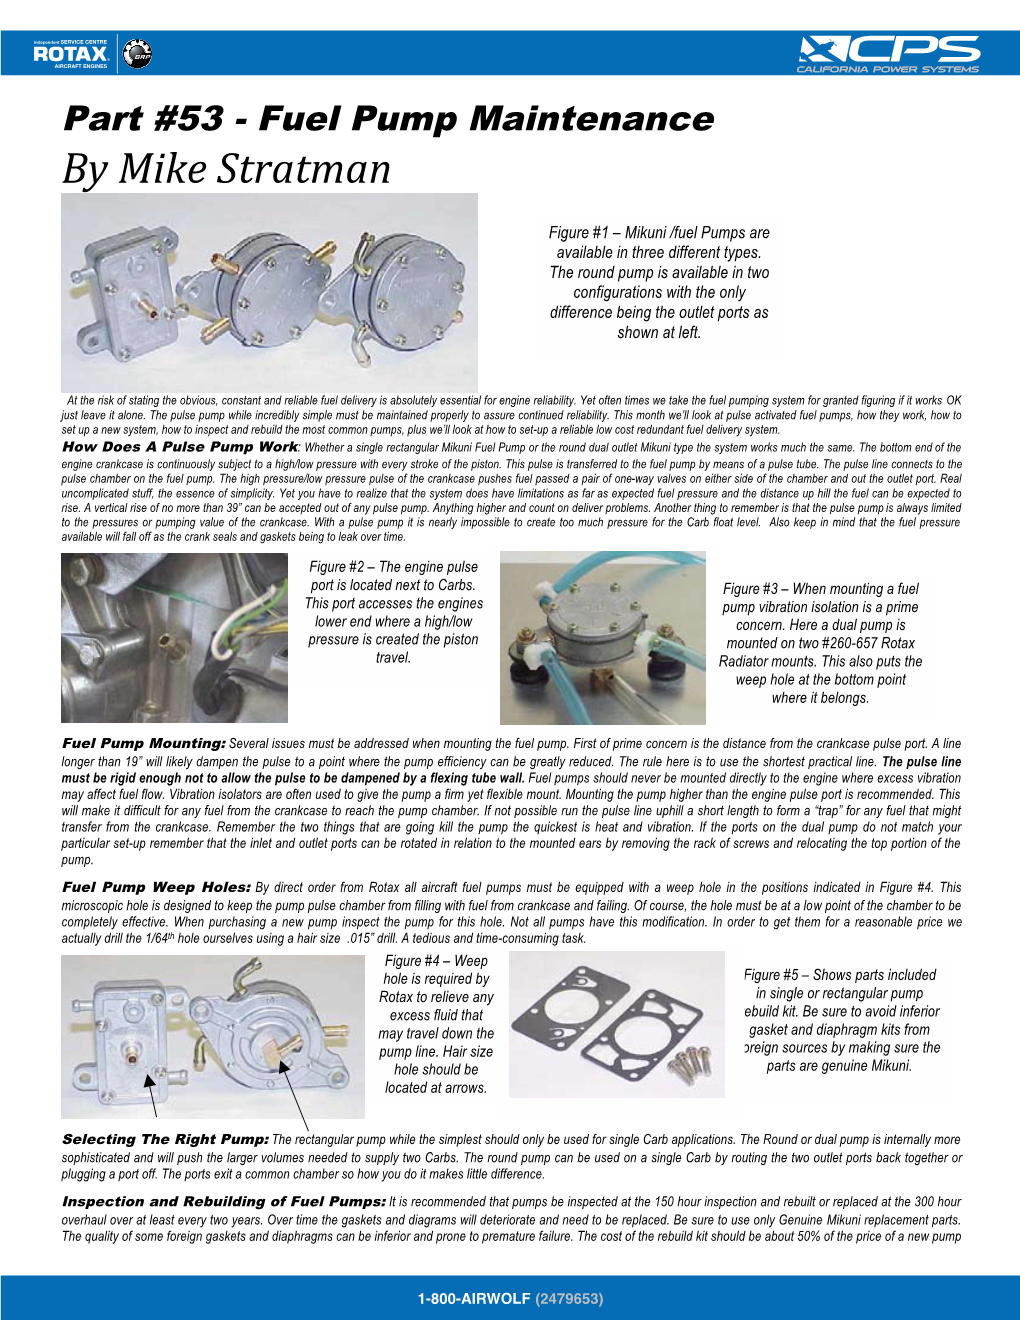 Part #53 - Fuel Pump Maintenance by Mike Stratman